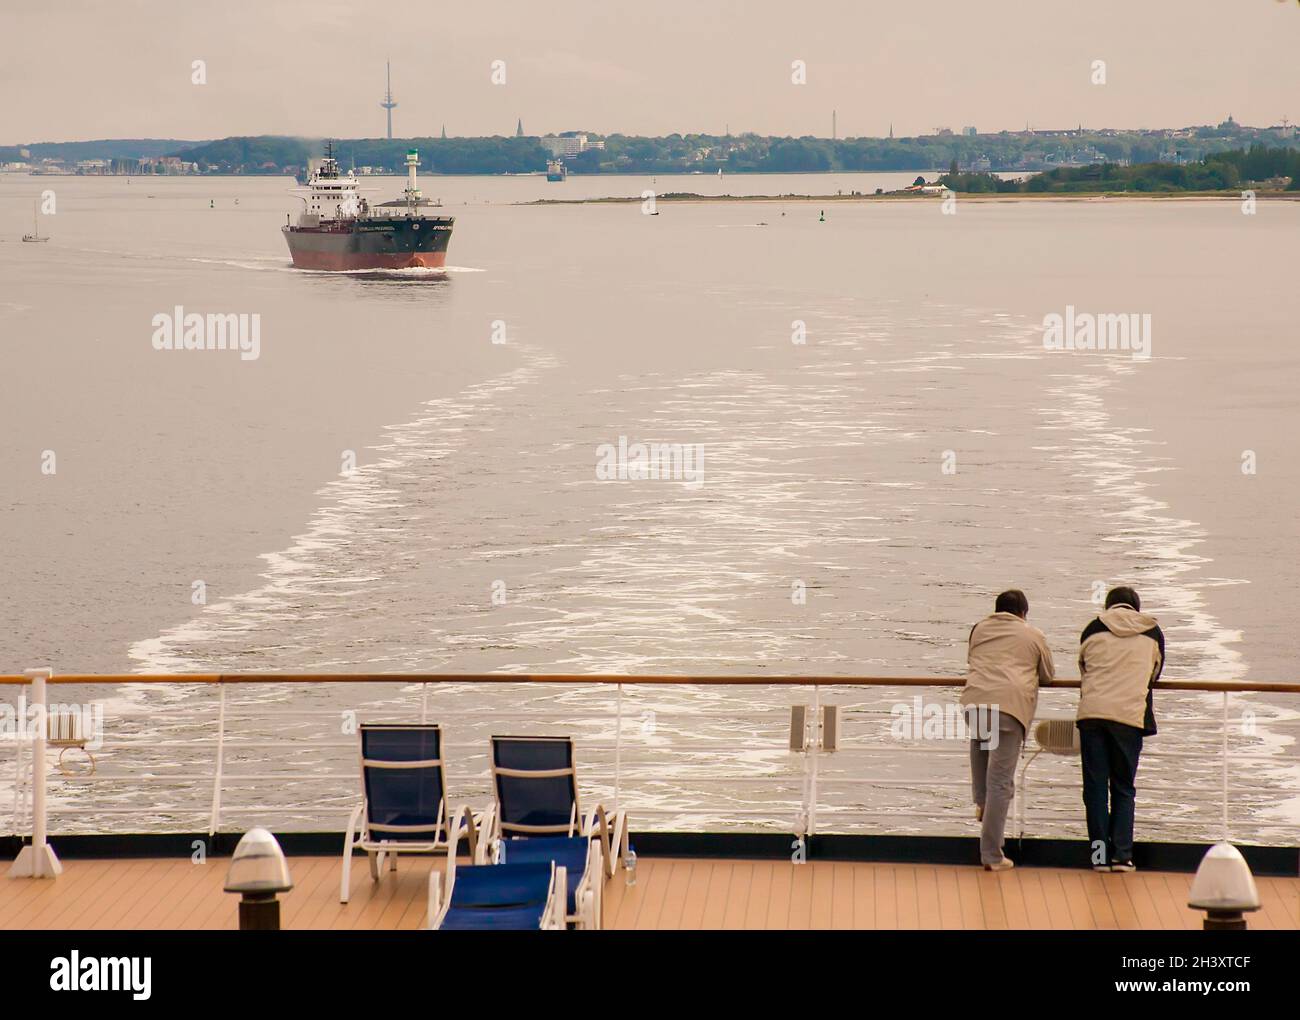 Cruise ship passengers view the scenery near Kiel Germany Stock Photo